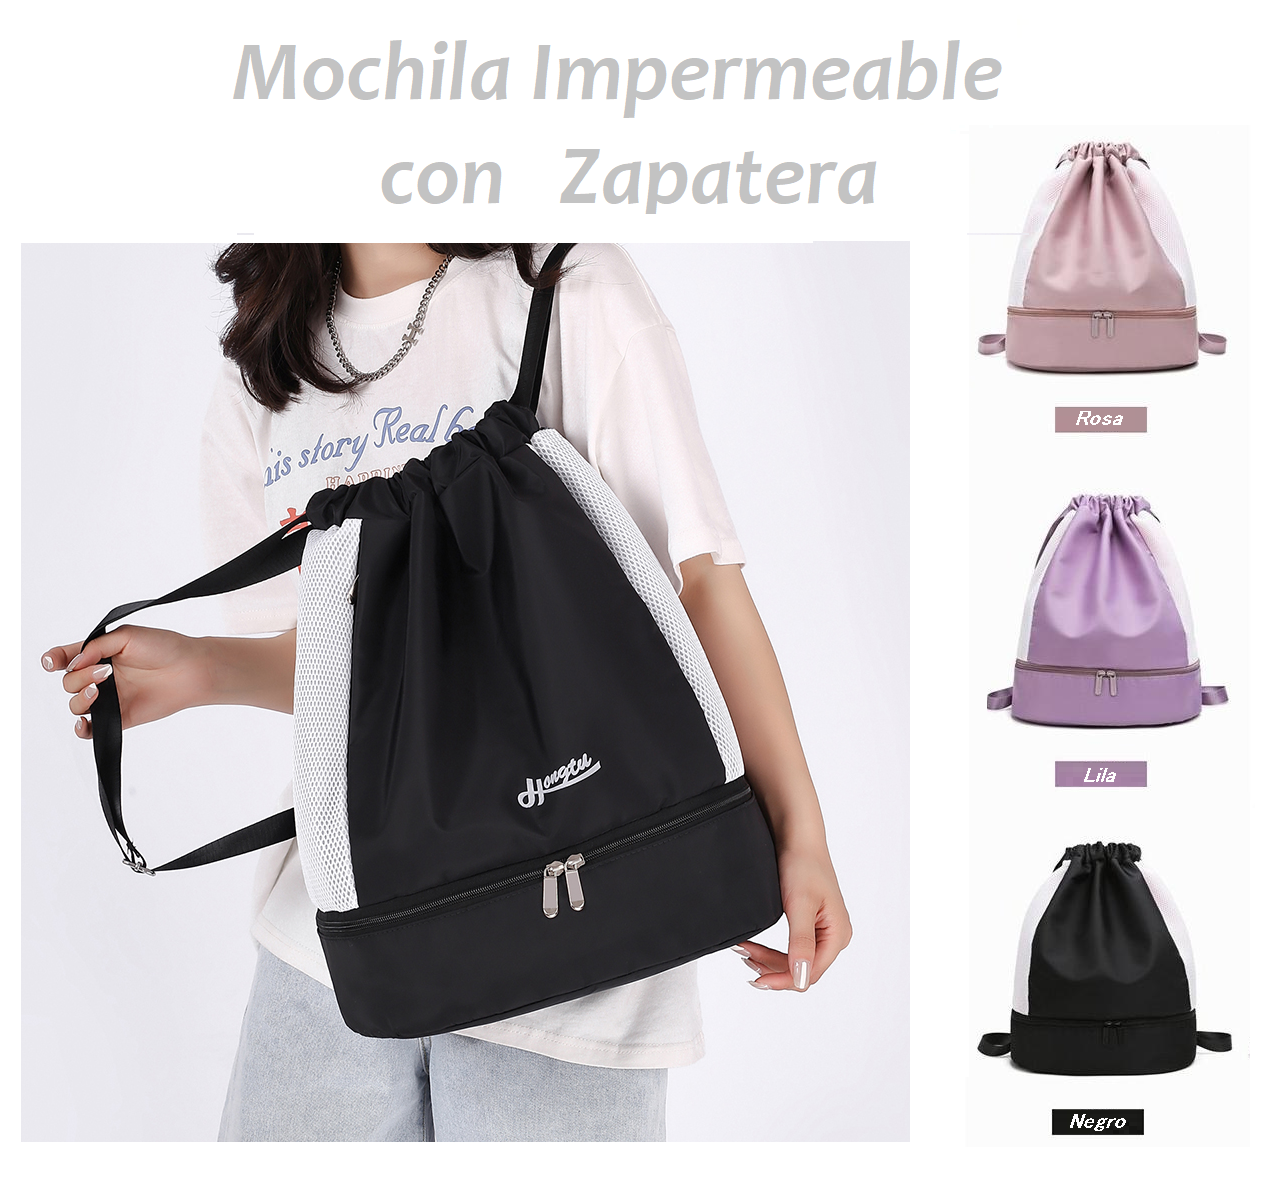 Mochila - Impermeable con Zapatera